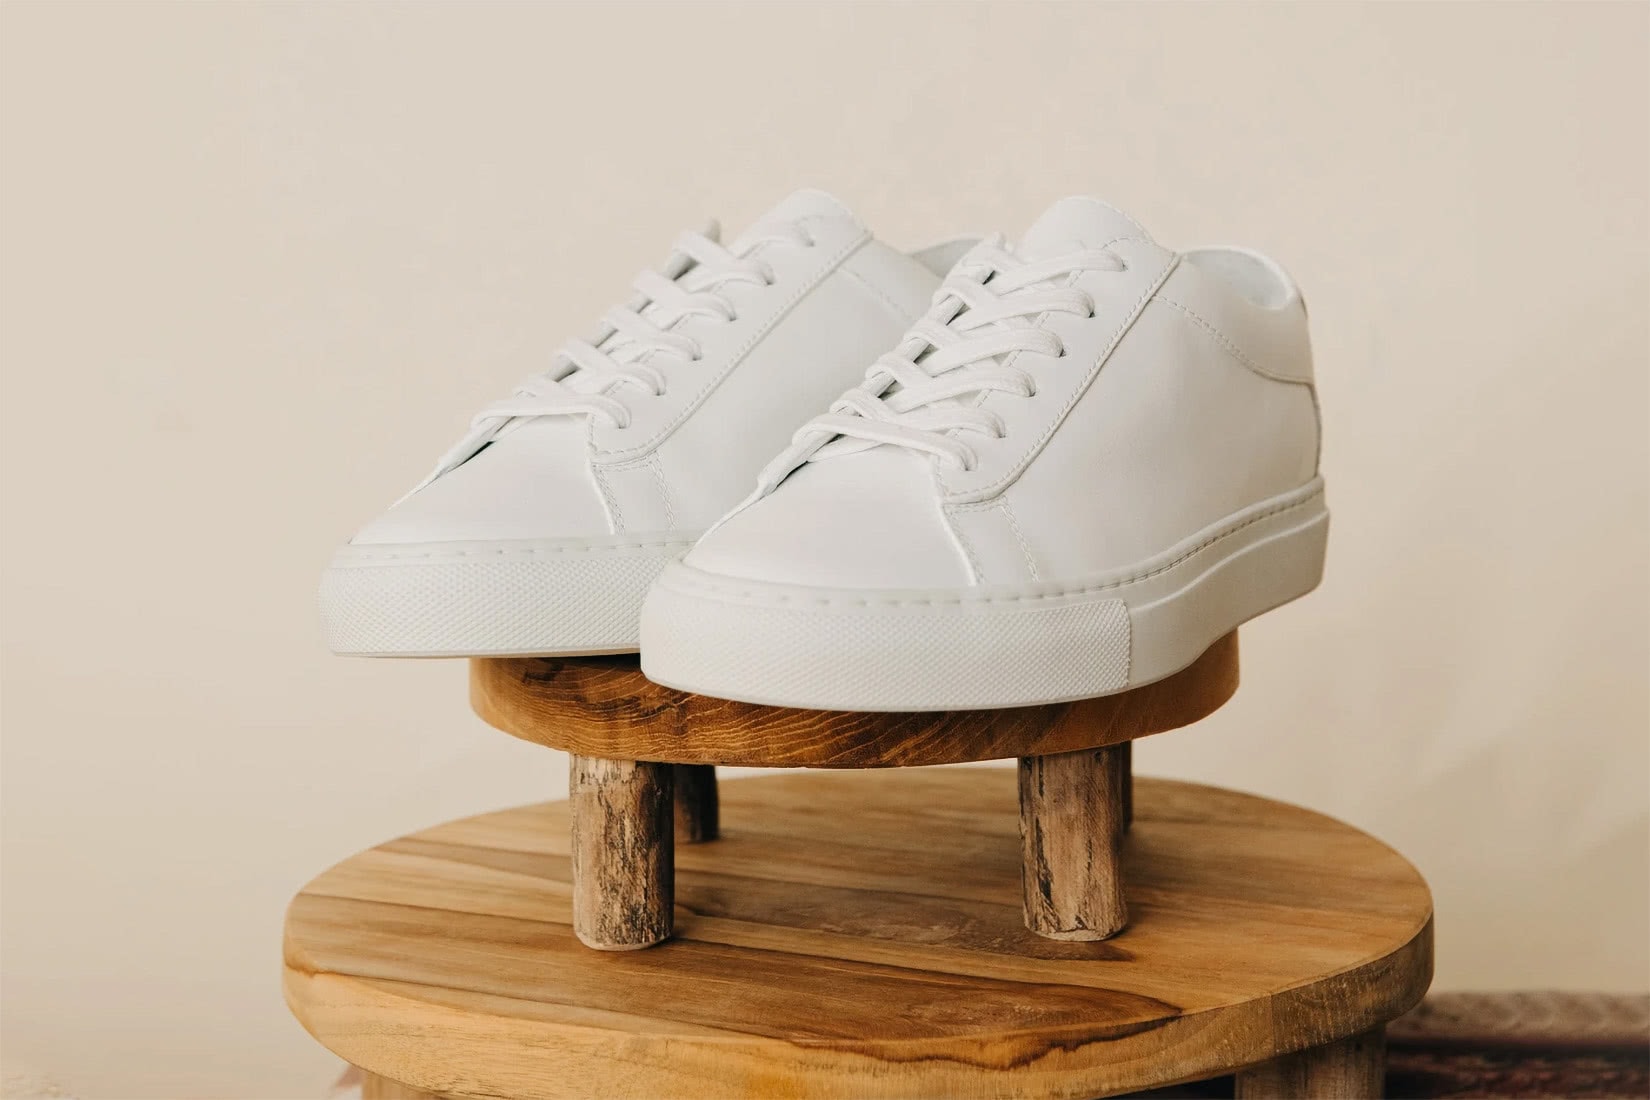 Koio sneakers review capri comfort - Luxe Digital